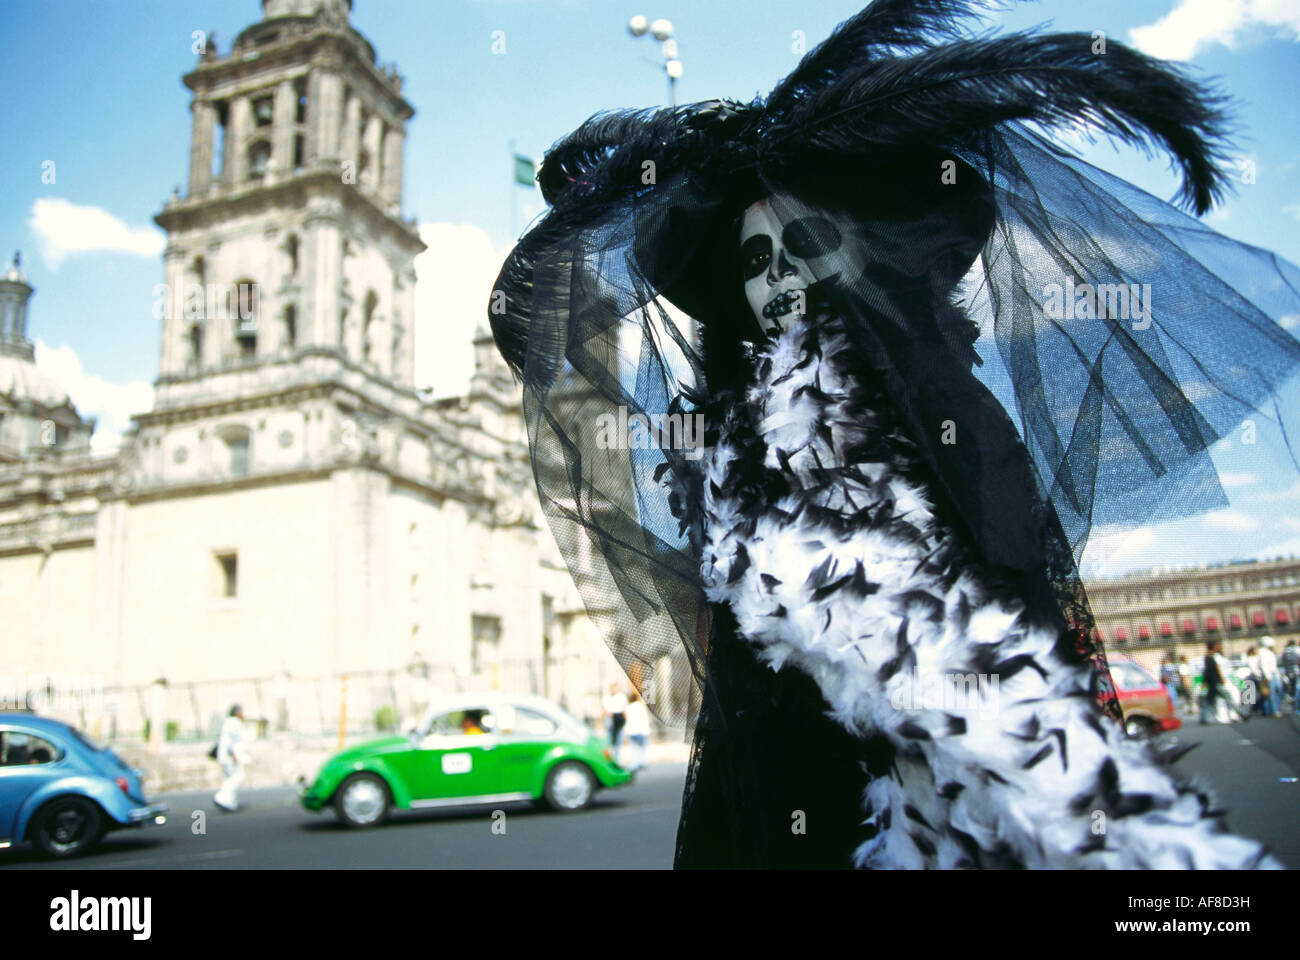 Eine Person in der Verkleidung, trägt eine Kostüm, Tag der Toten, Dia de Los Muertos, Mexico City, Mexiko Stockfoto